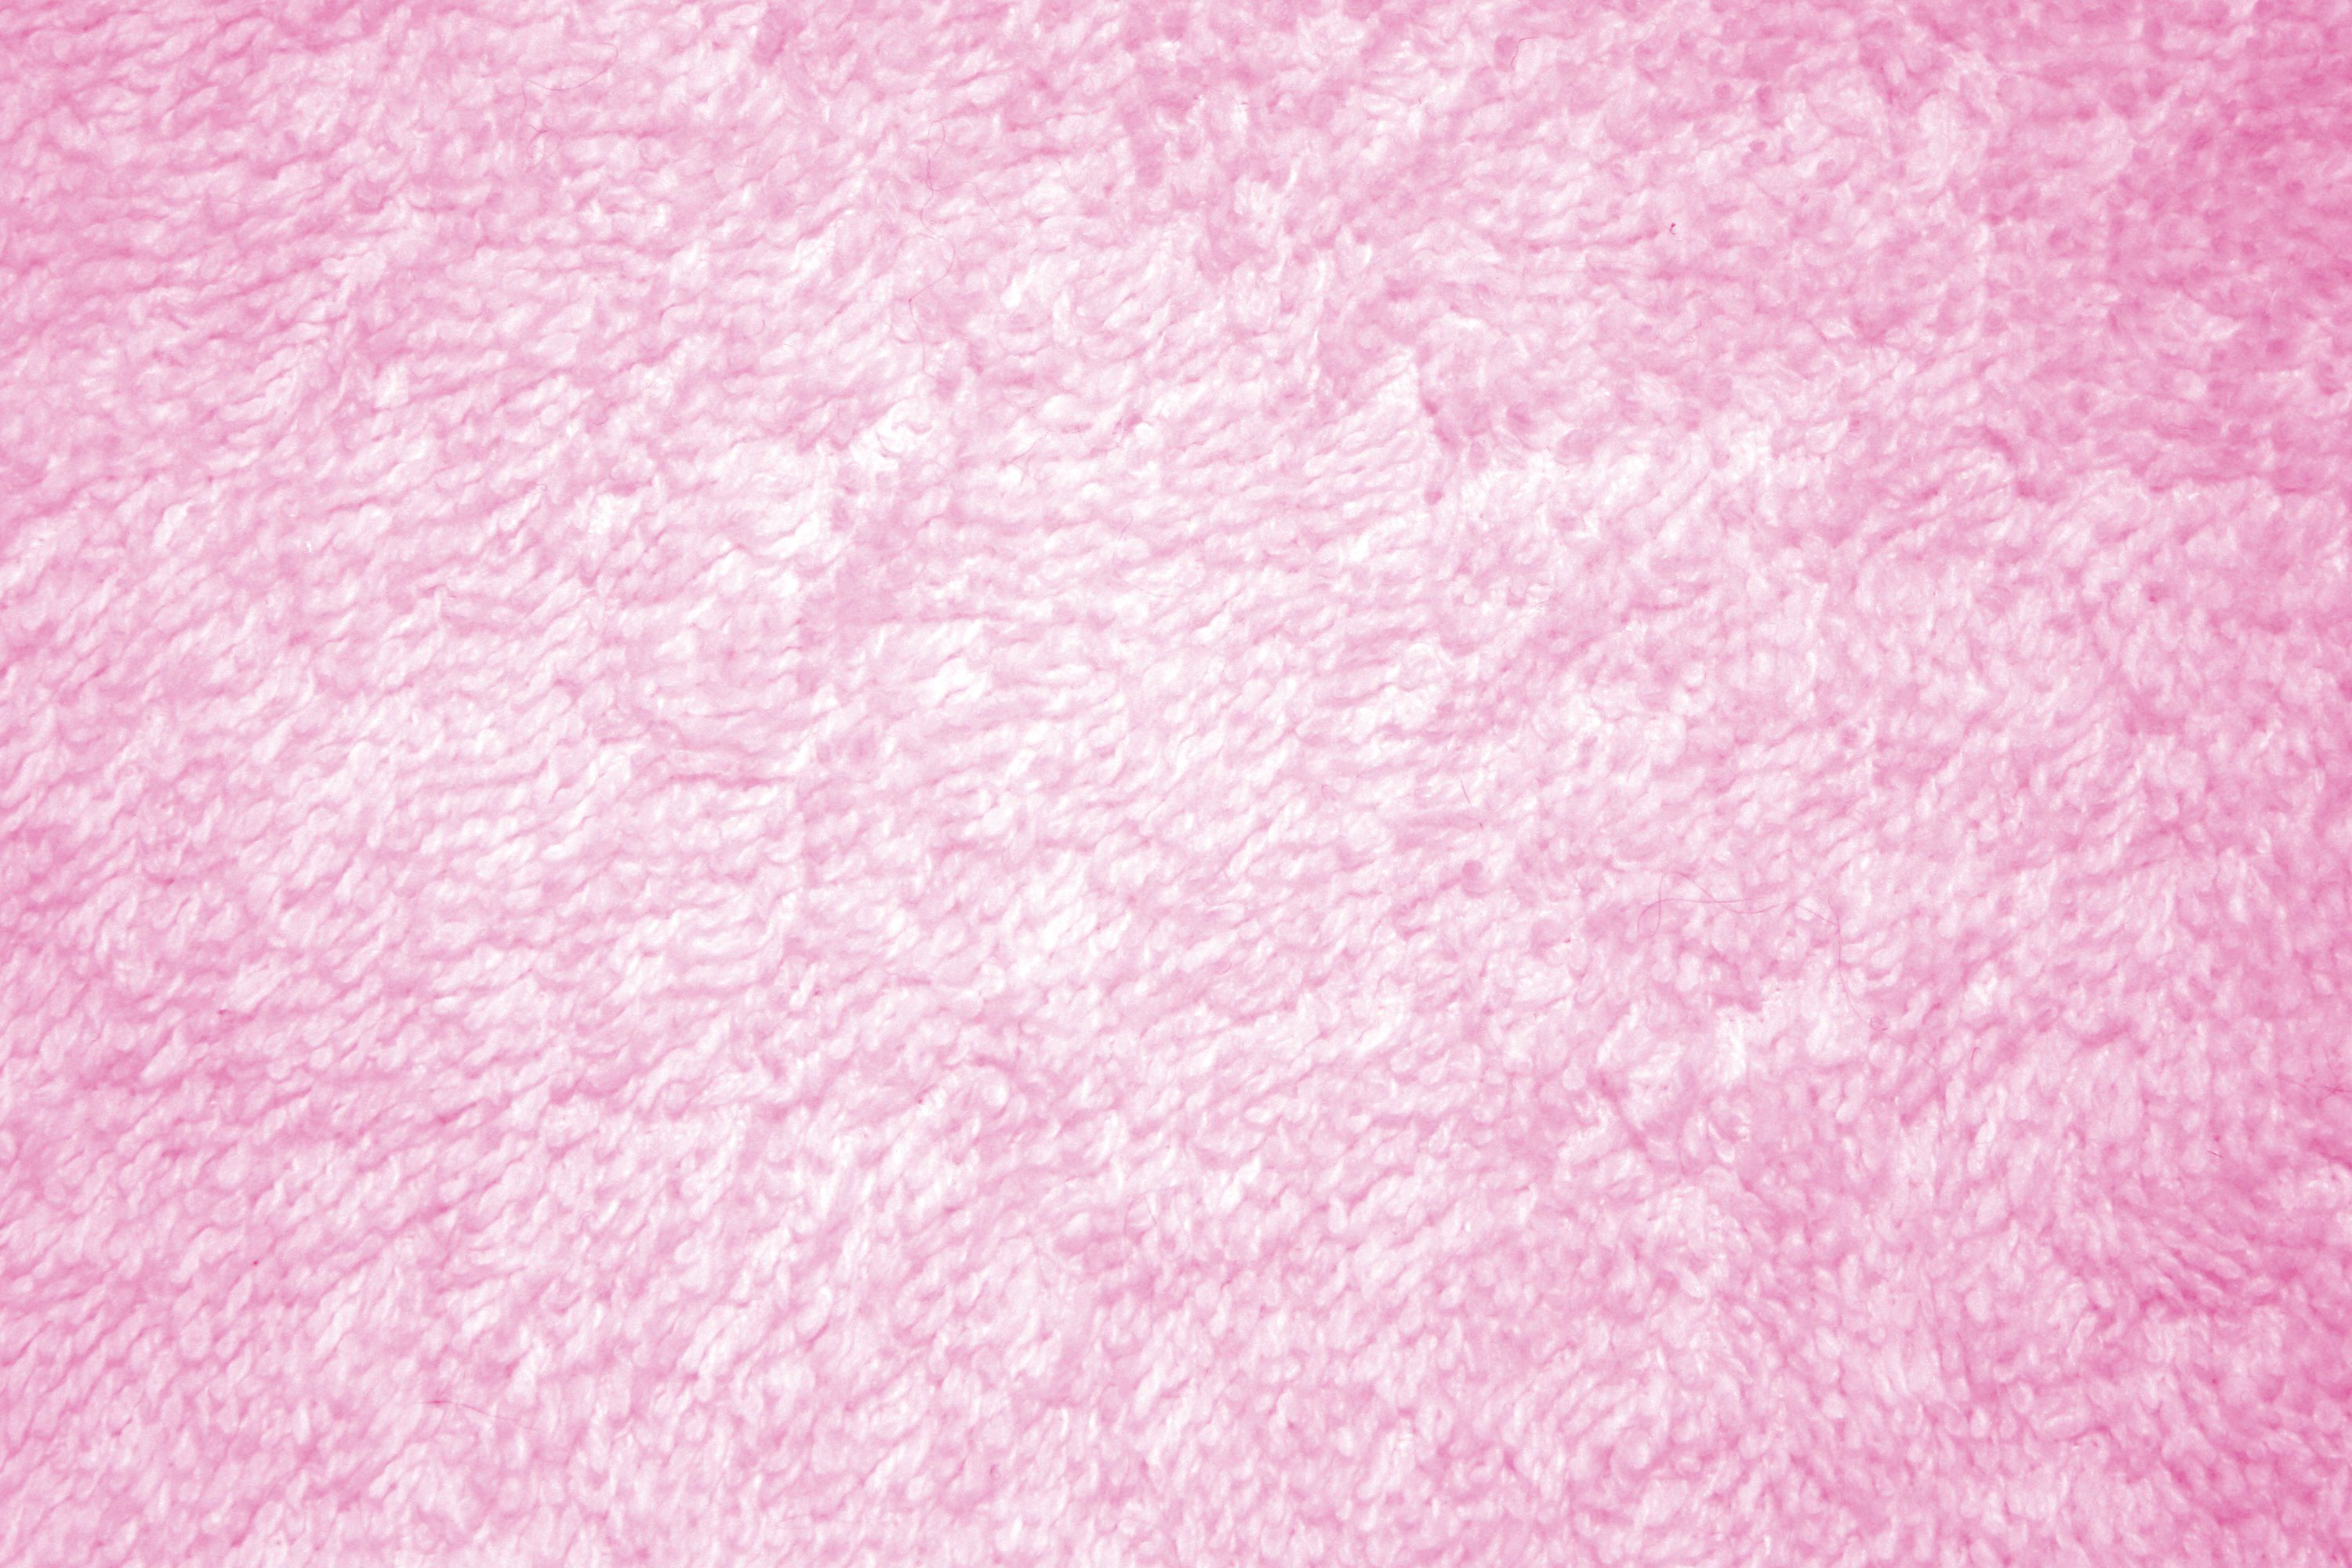 High Resolution Pink Textured Wallpaper